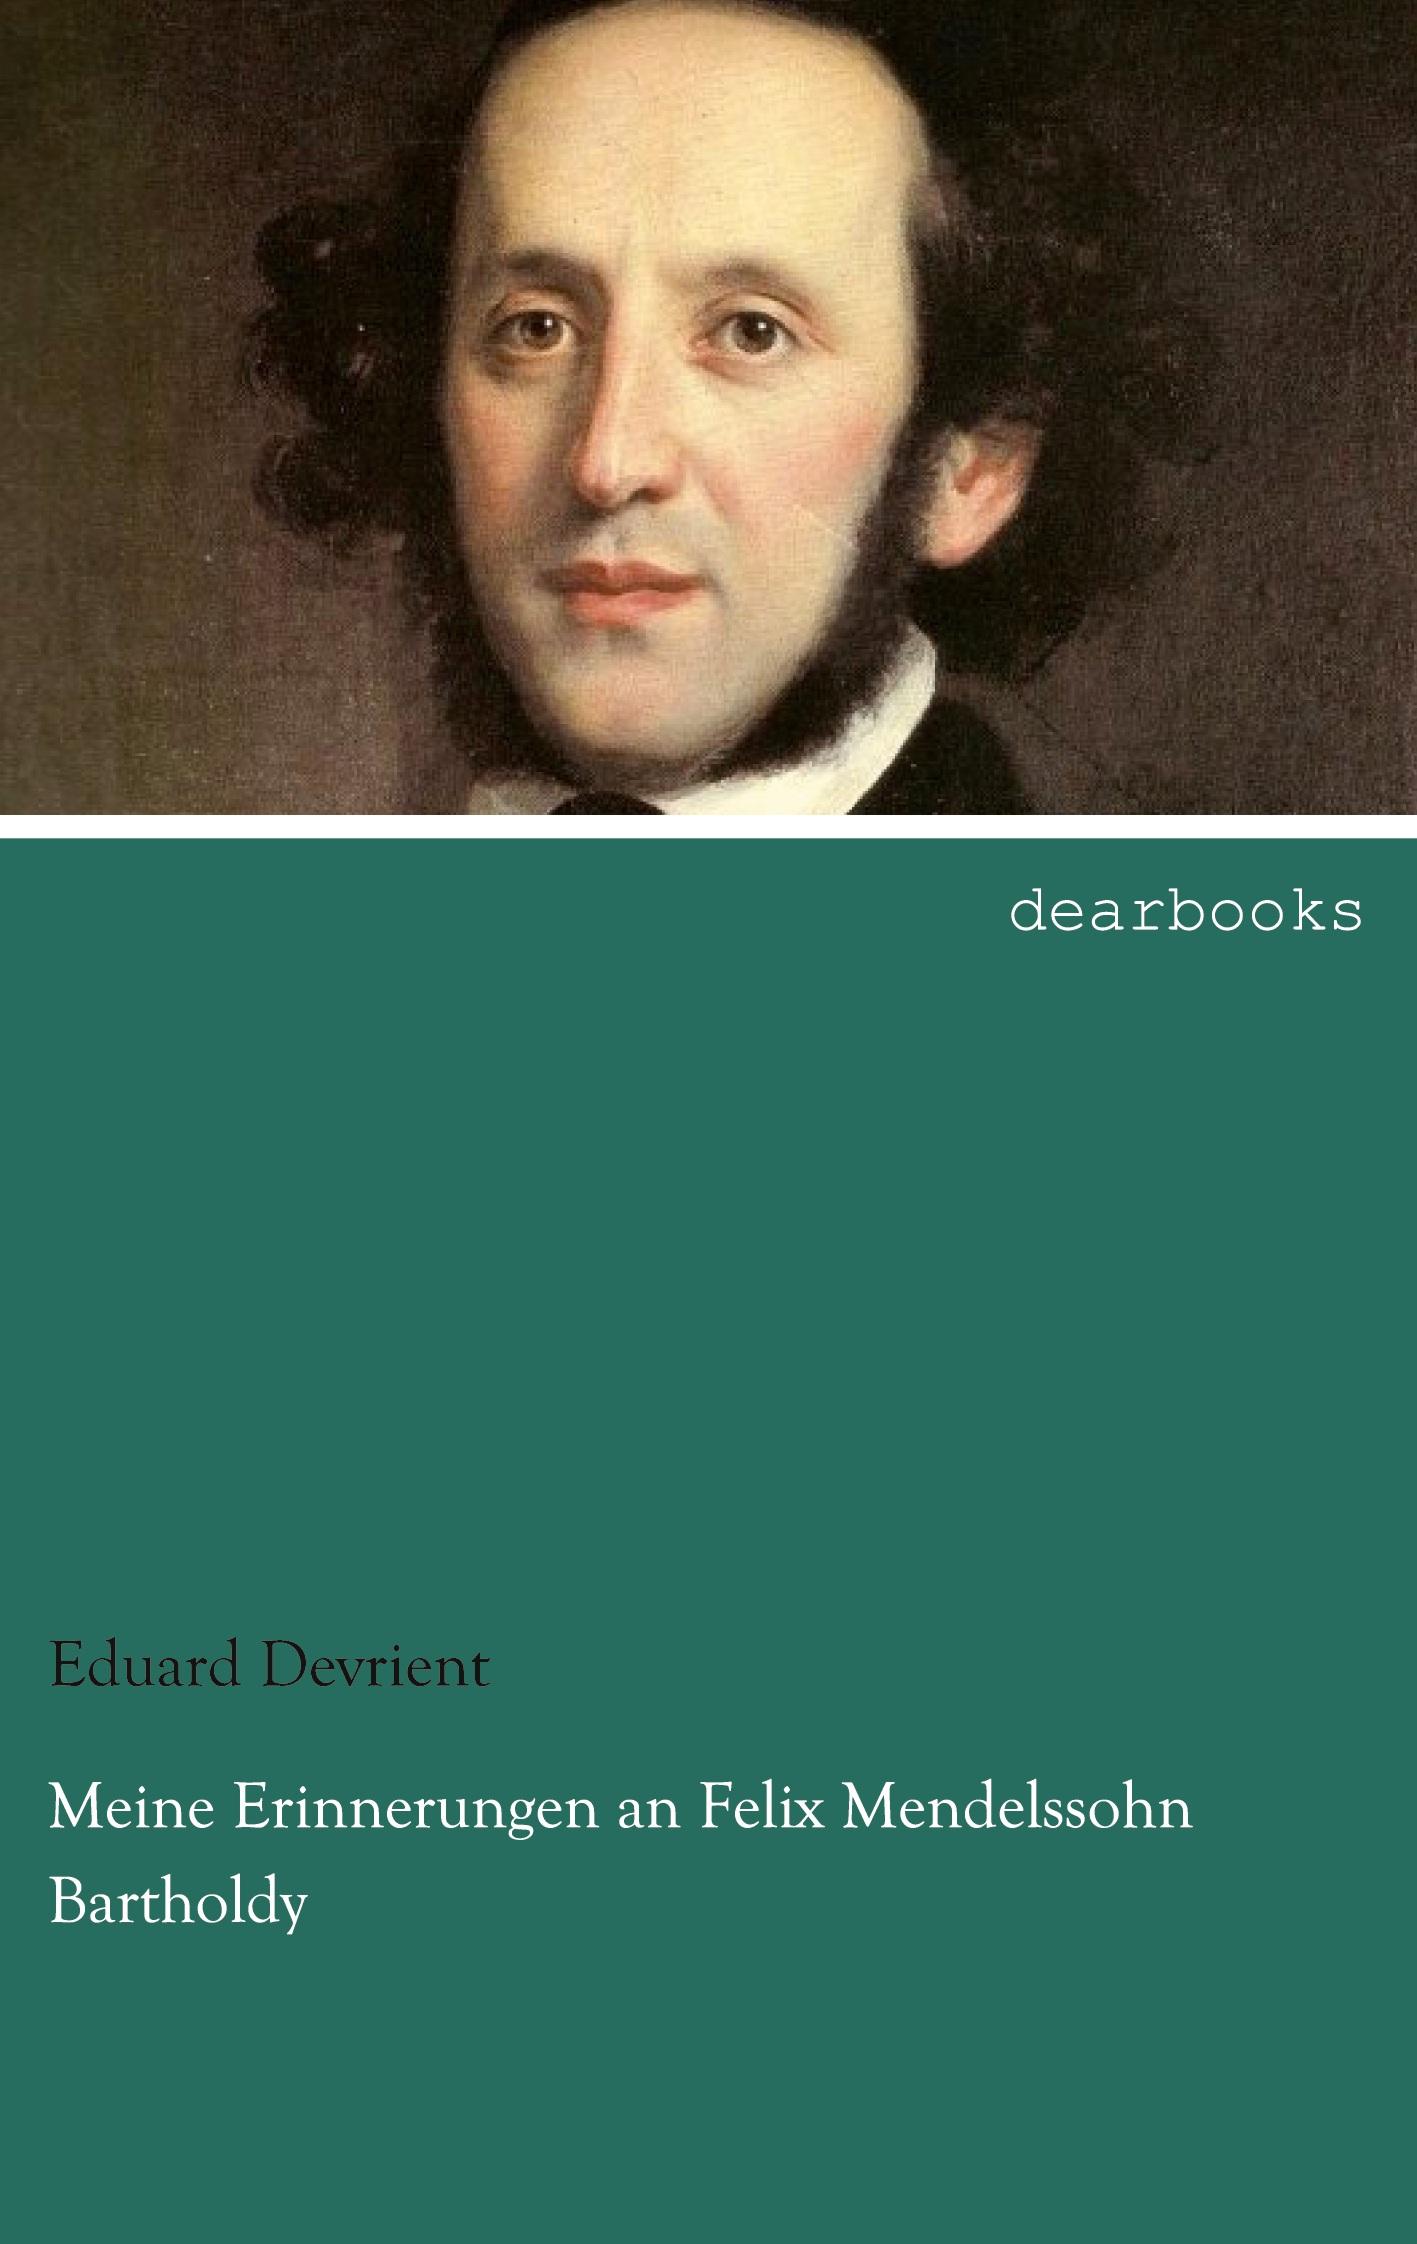 Meine Erinnerungen an Felix Mendelssohn Bartholdy | Eduard Devrient | Taschenbuch | Paperback | 296 S. | Deutsch | 2013 | dearbooks | EAN 9783954556120 - Devrient, Eduard